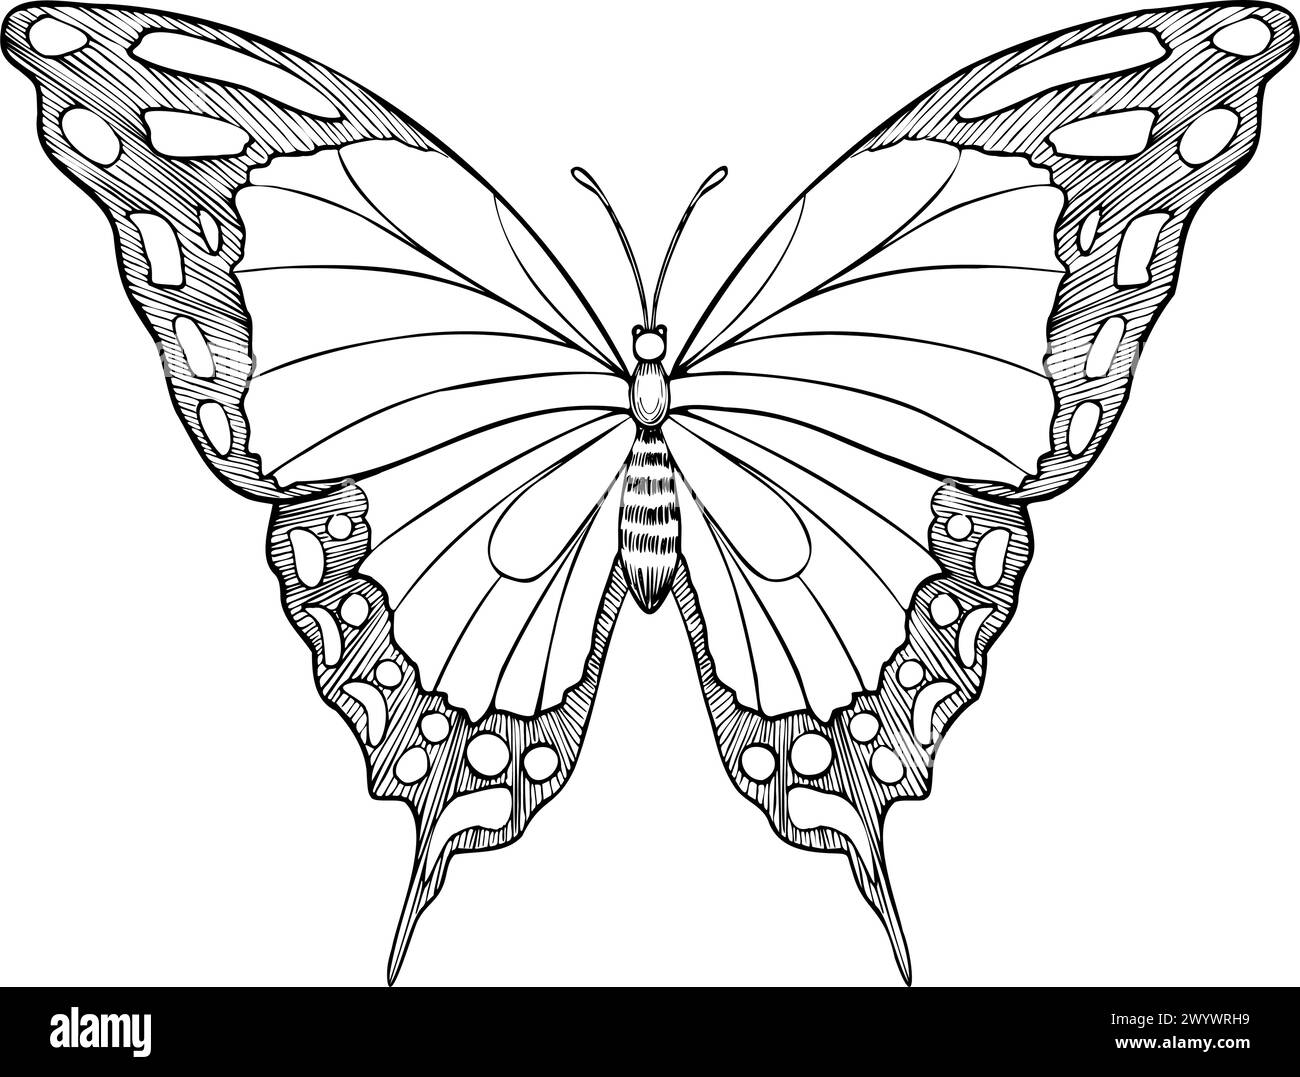 Schmetterling Machaon Vektor-Illustration. Zeichnung von Insekten mit Flügeln, die mit schwarzer Tinte bemalt sind. Handgezeichnete Skizze von fliegenden Motten für Hochzeitseinladungen oder Postkarten. Vintage-Ätzung für Symbol oder Logo. Stock Vektor